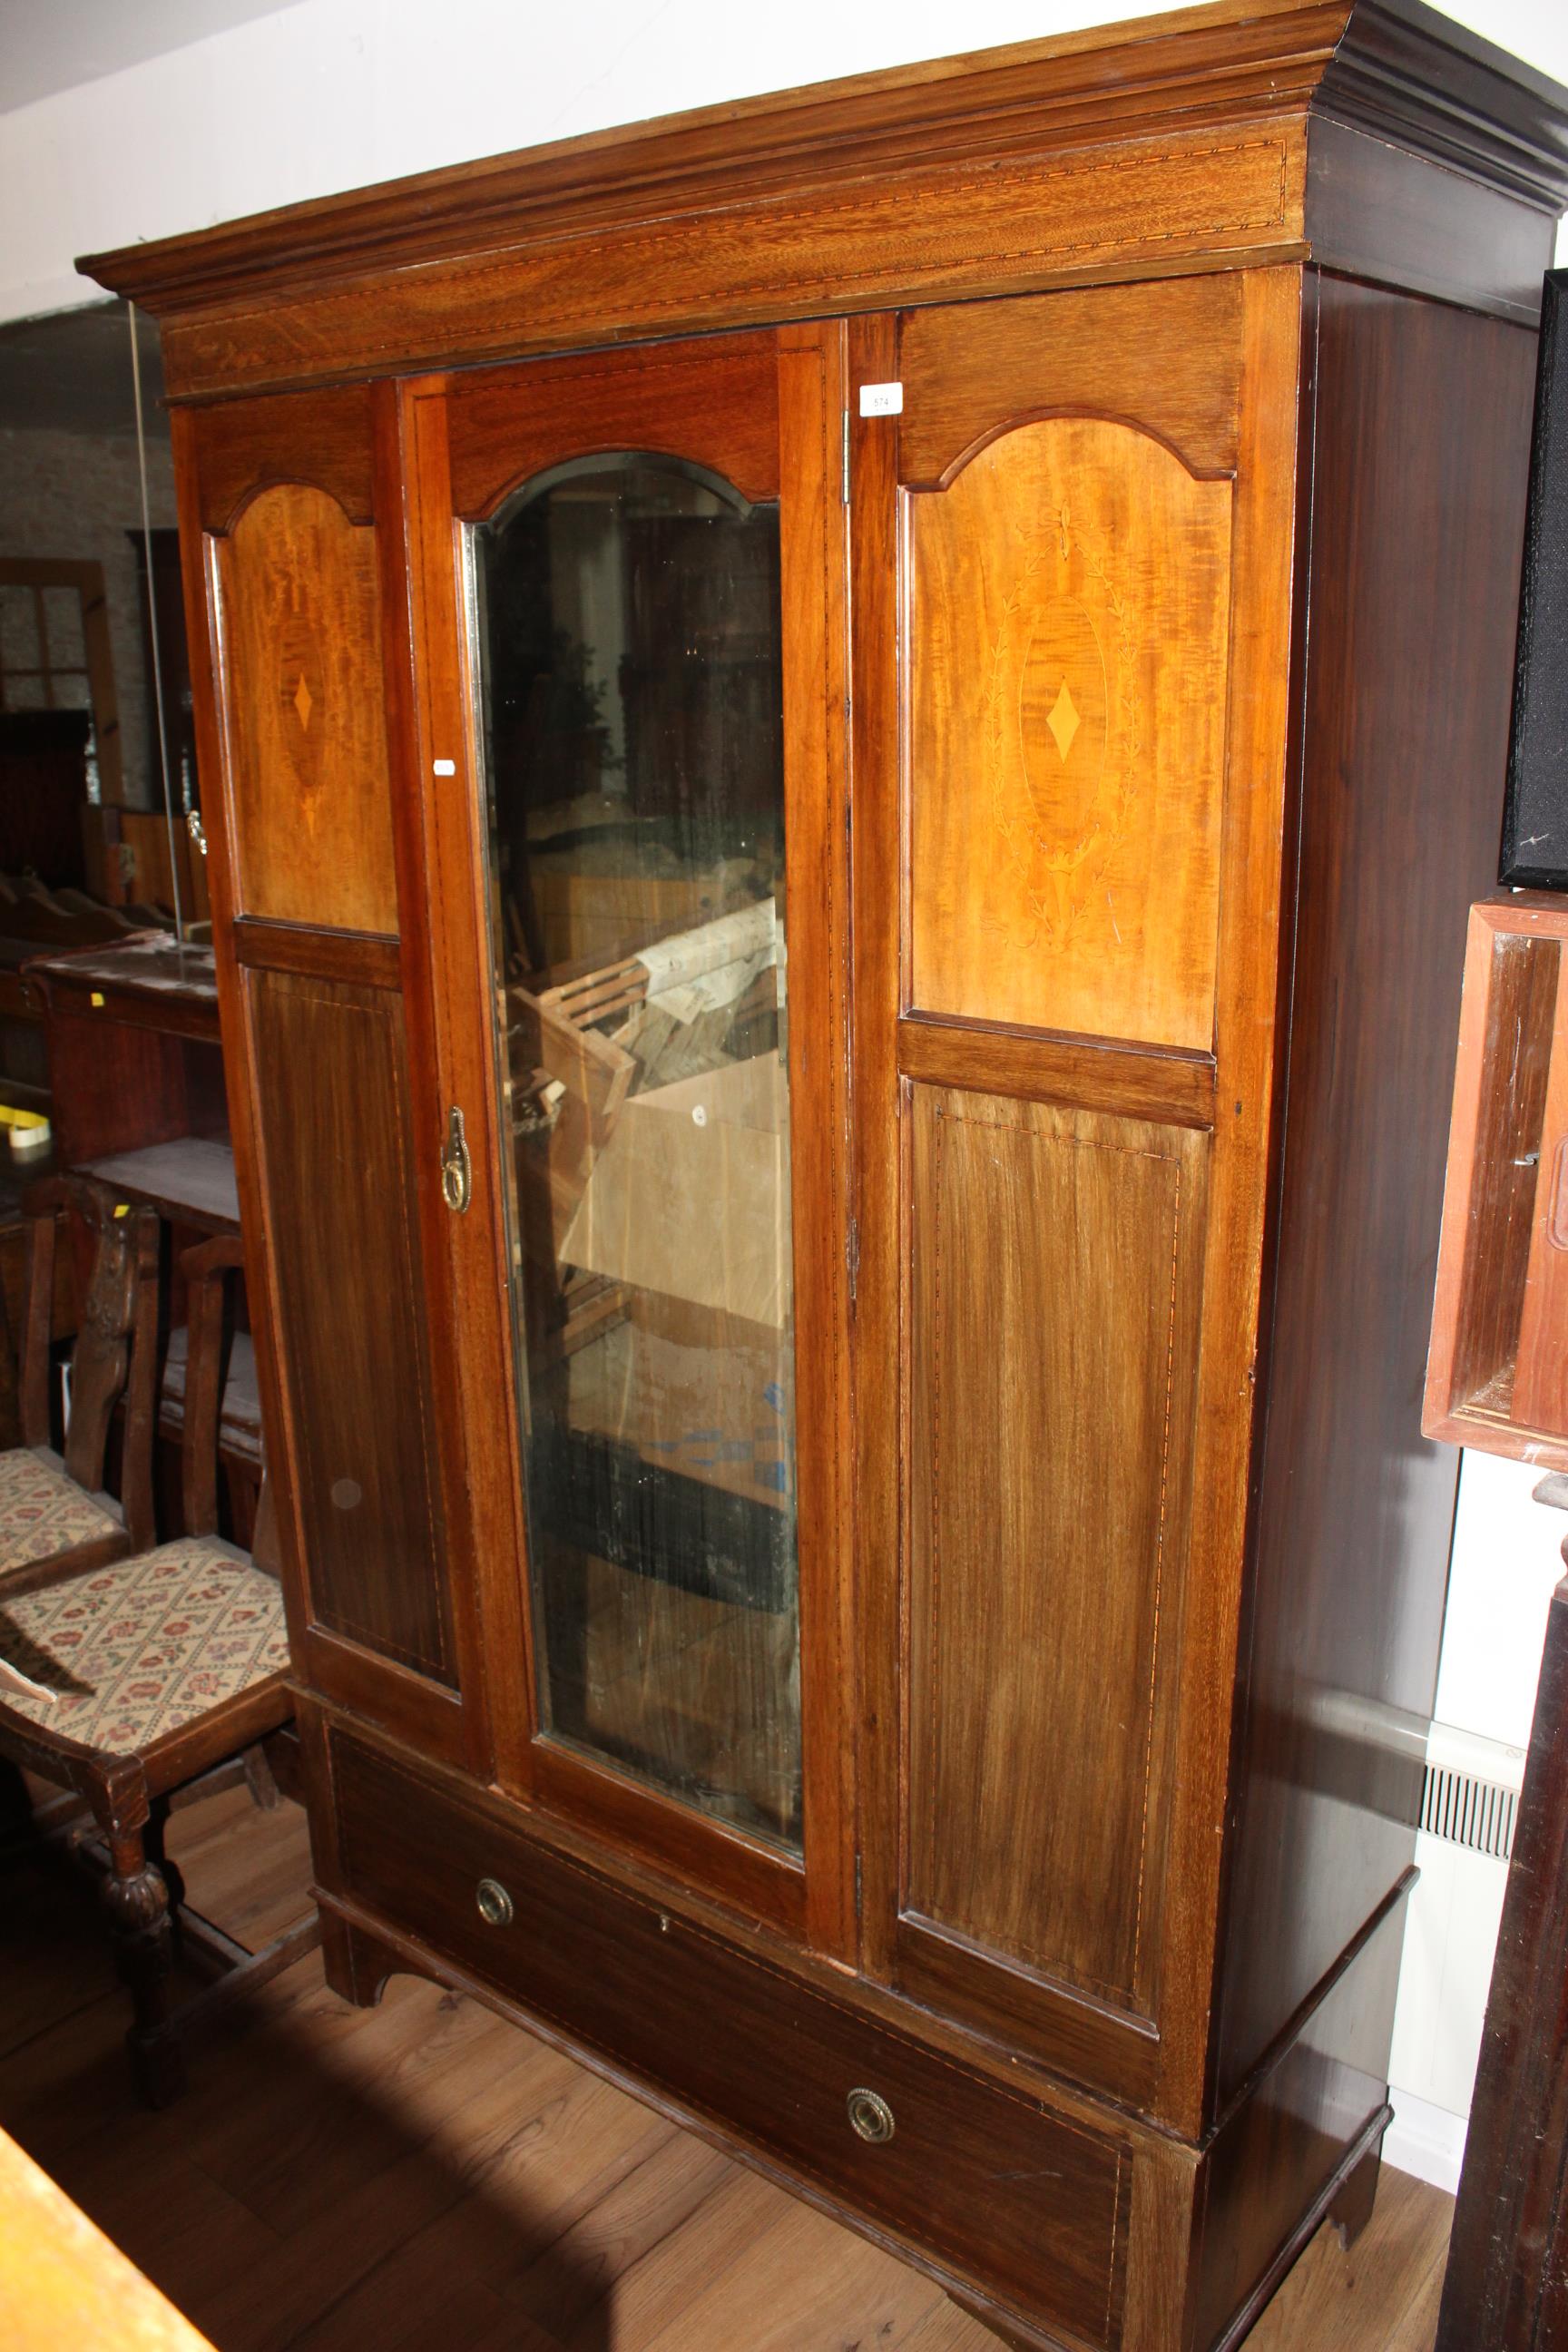 An Edwardian inlaid mahogany mirror door wardrobe,